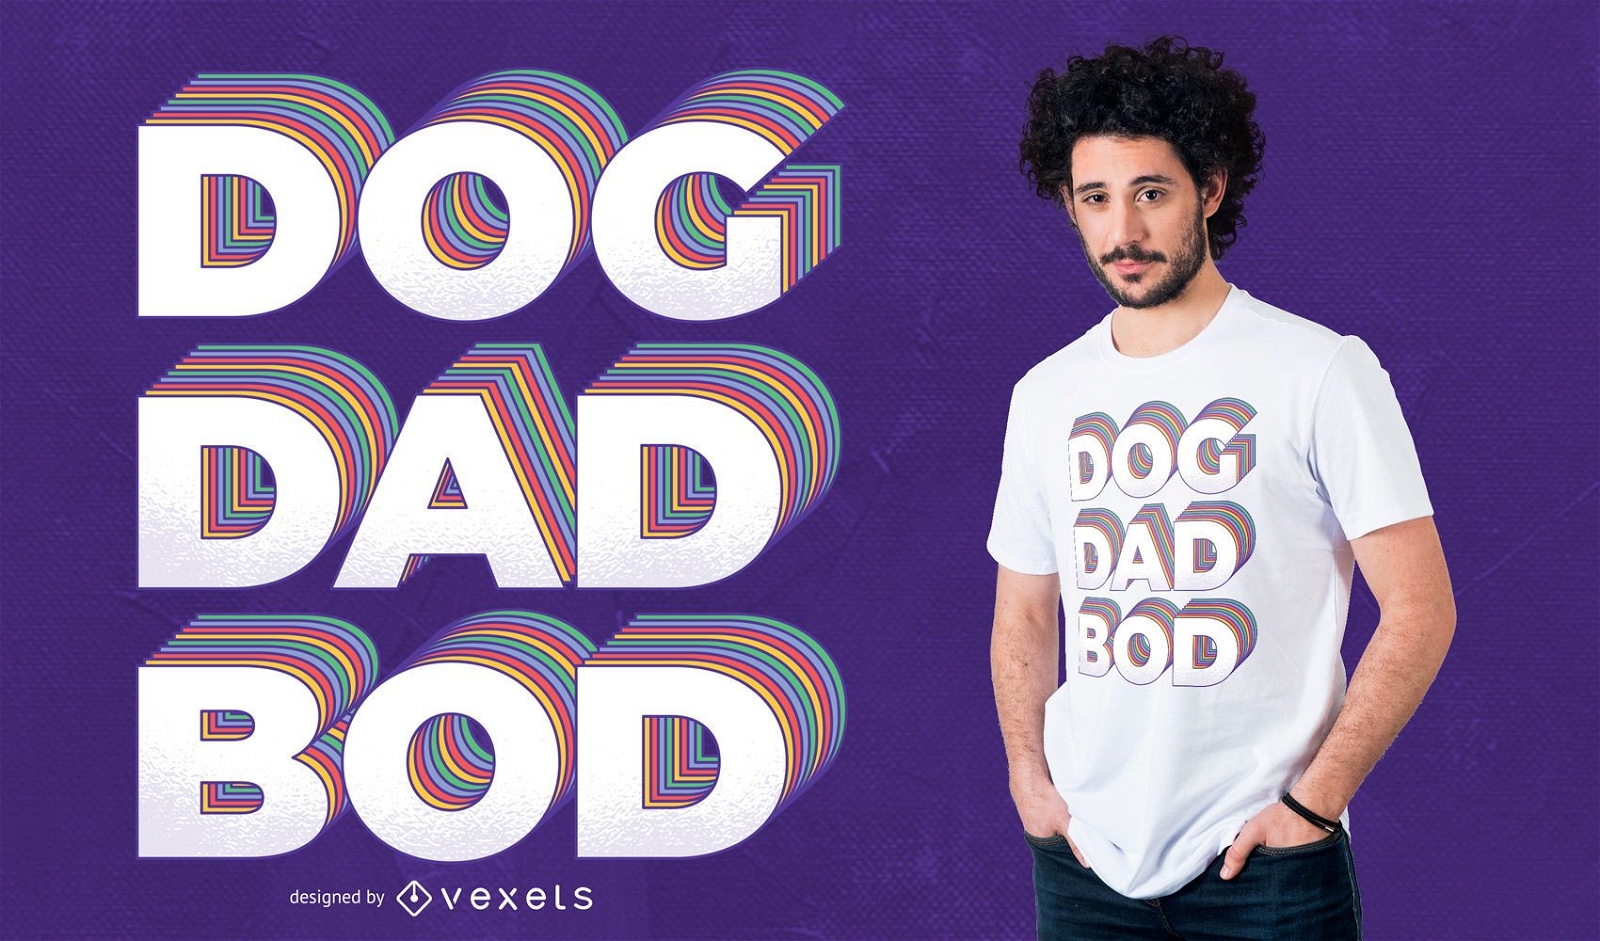 Dise?o de camiseta Dog Dad Bod